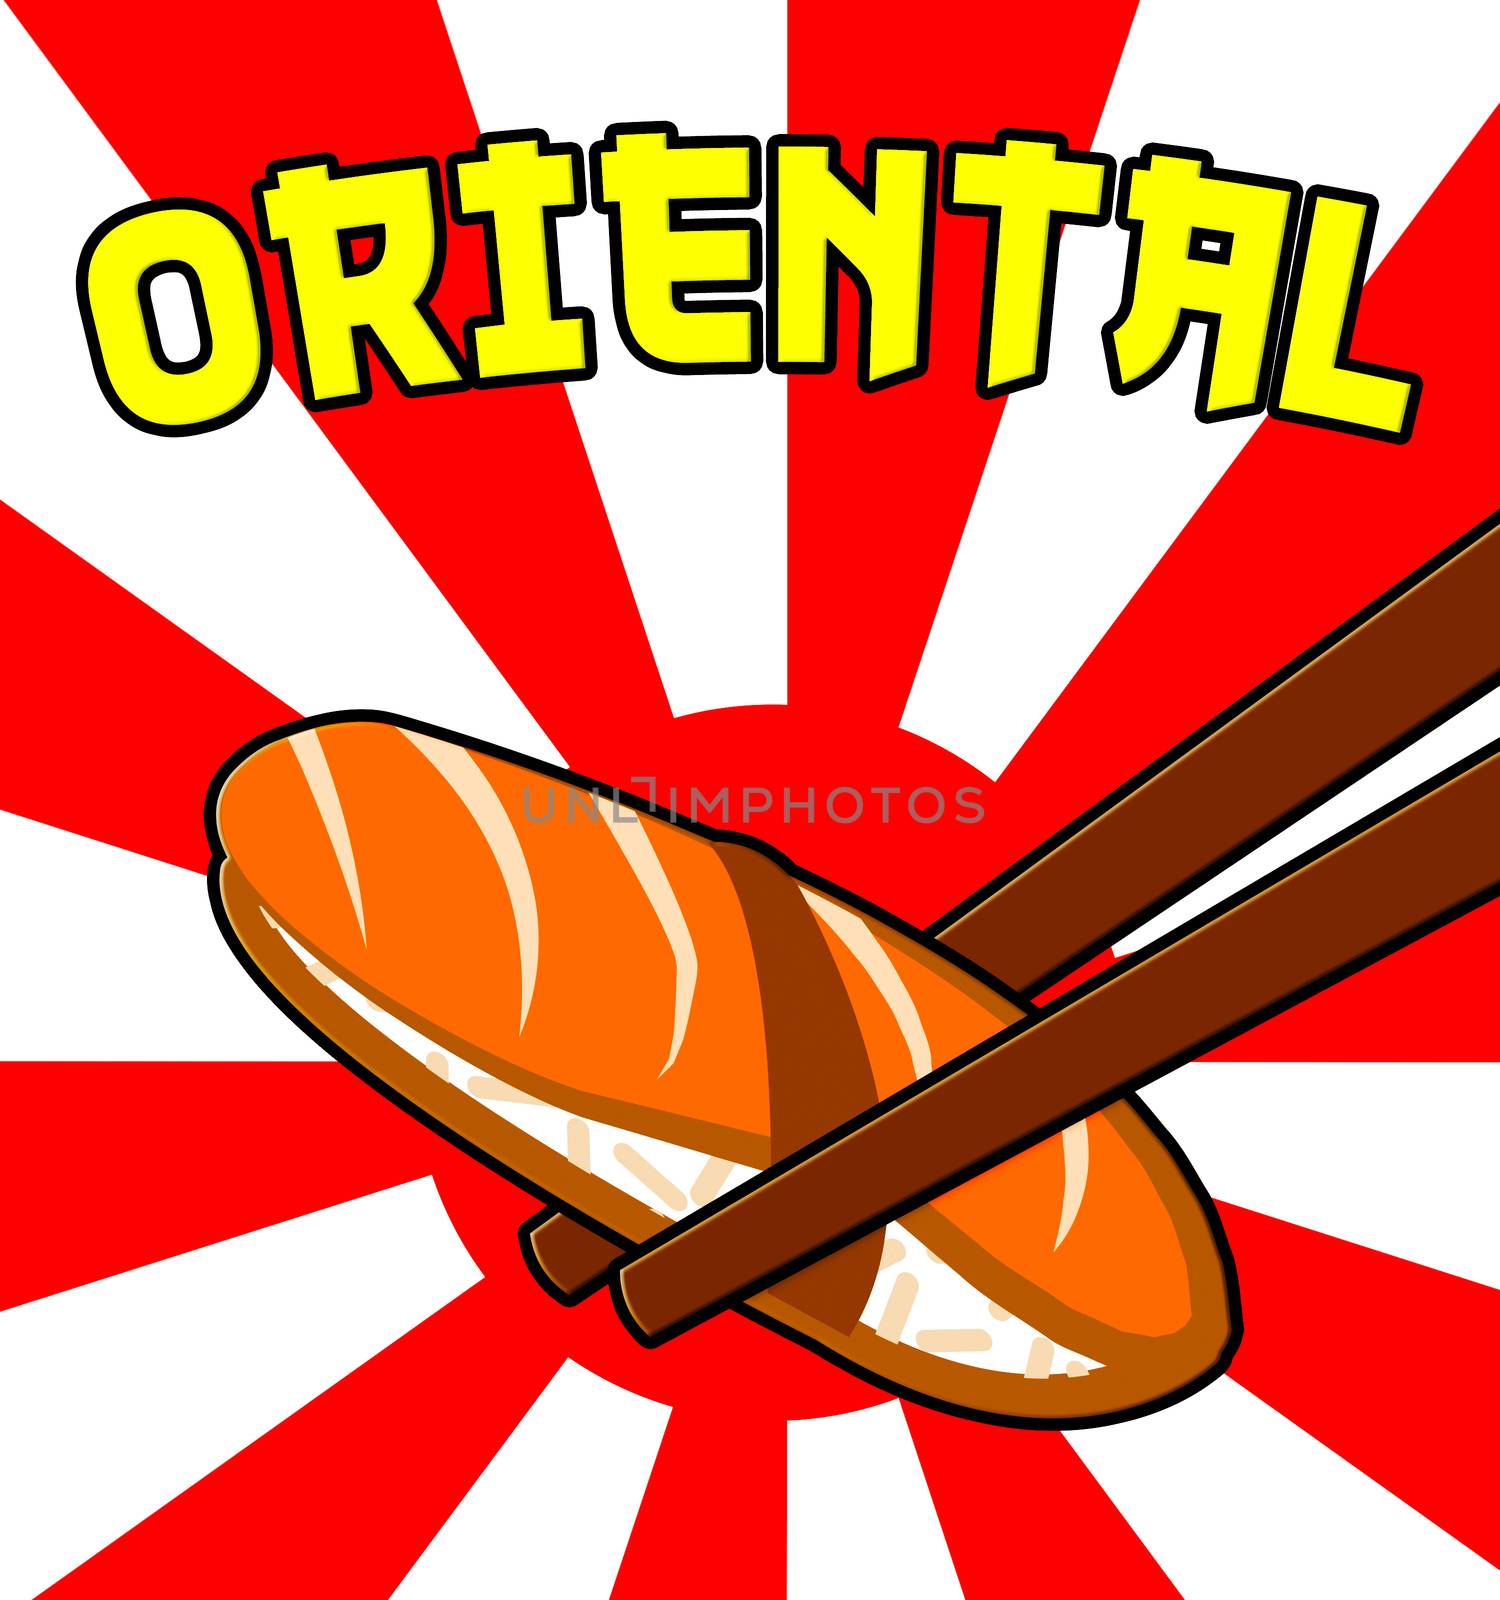 Oriental Sushi Shows Japan Cuisine 3d Illustration by stuartmiles